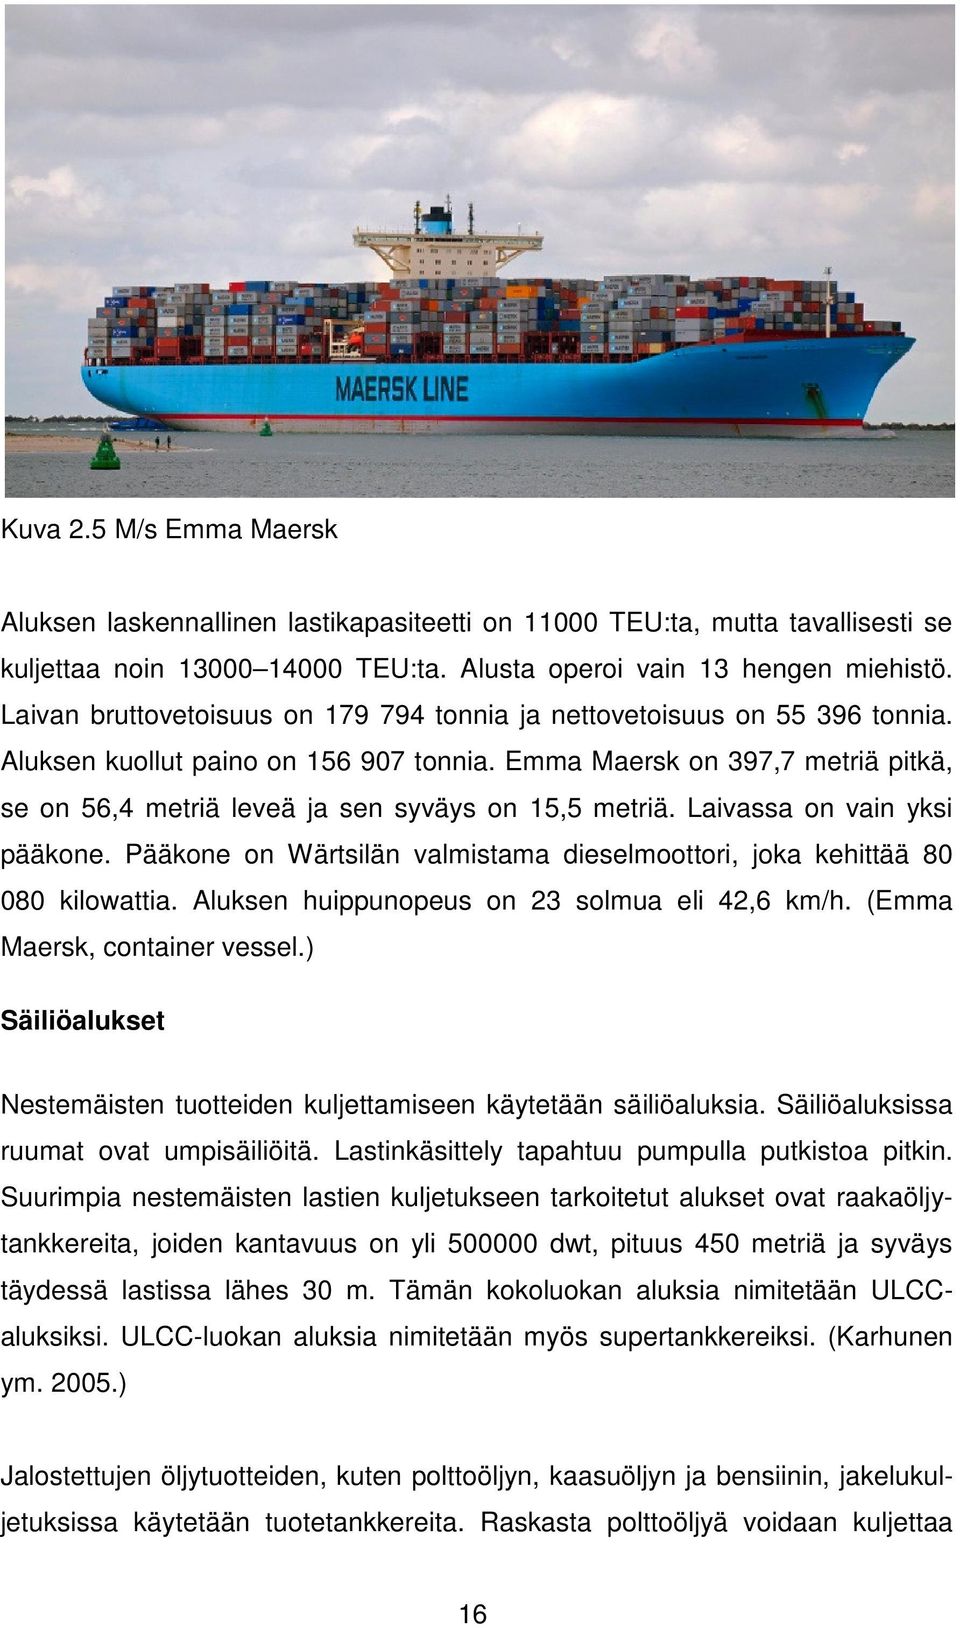 Emma Maersk on 397,7 metriä pitkä, se on 56,4 metriä leveä ja sen syväys on 15,5 metriä. Laivassa on vain yksi pääkone. Pääkone on Wärtsilän valmistama dieselmoottori, joka kehittää 80 080 kilowattia.